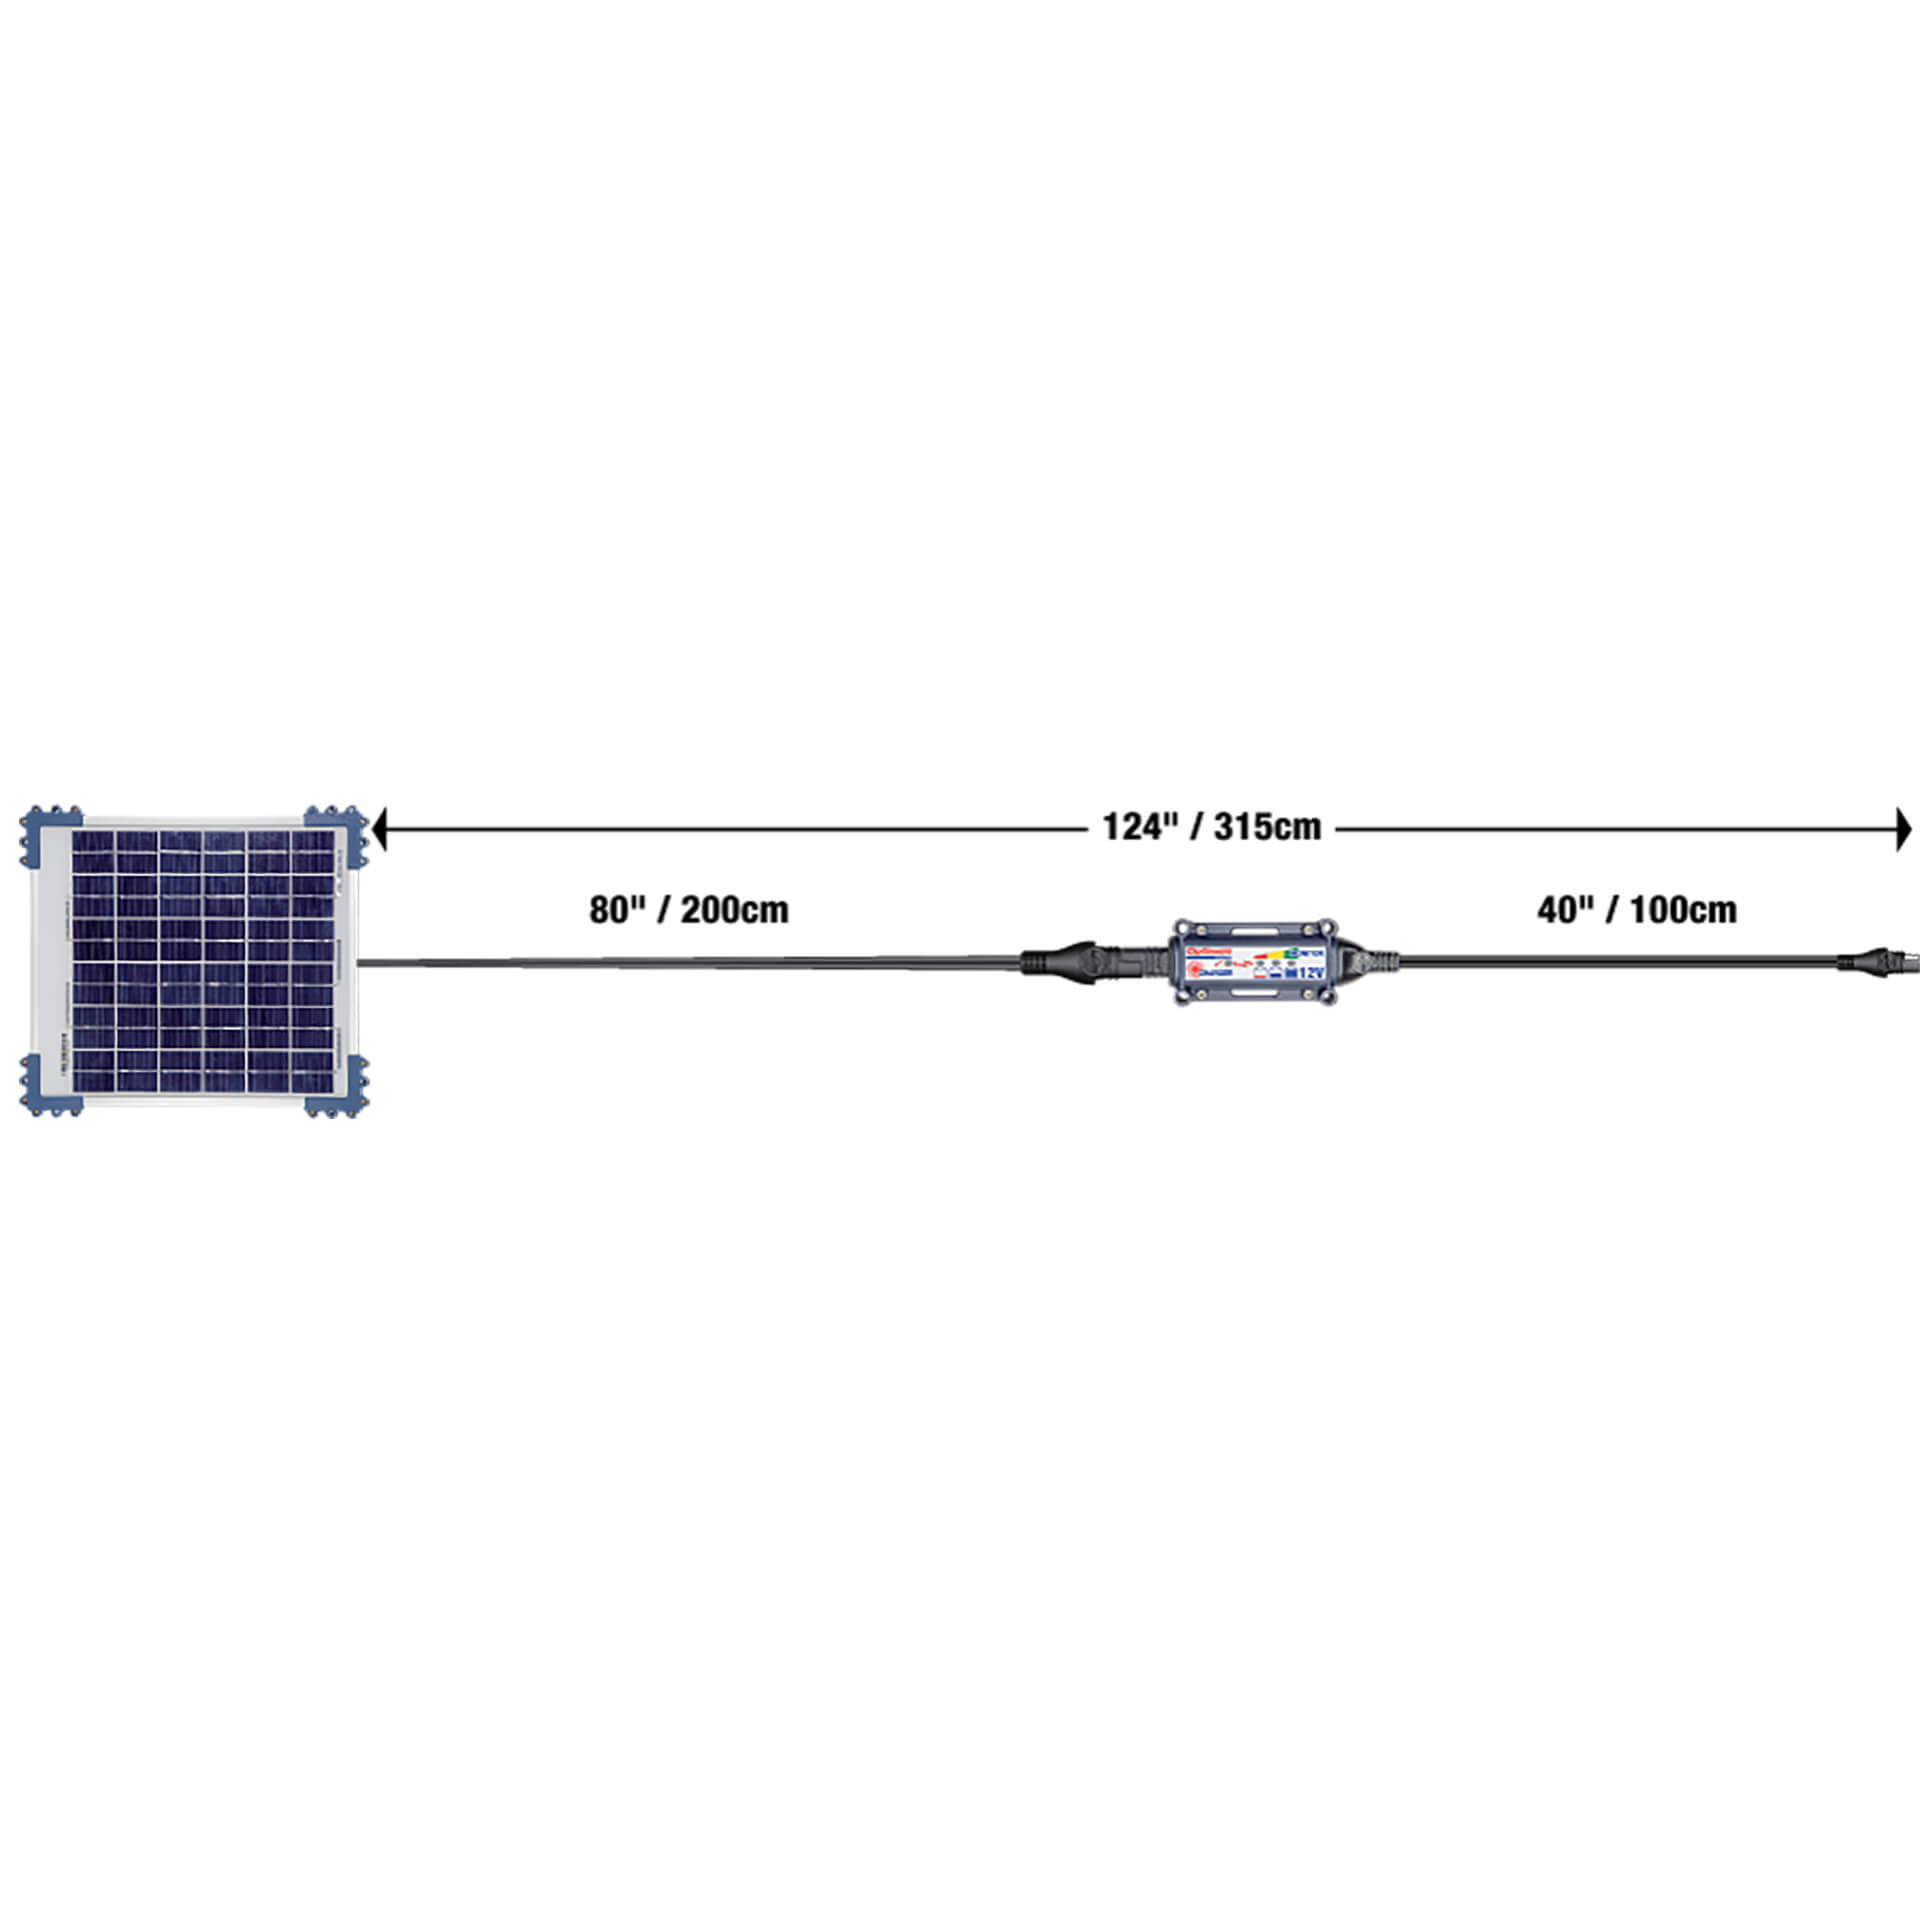 optimate Solar DUO Charger 20 Watt for Lead/GEL/AGM/LFP